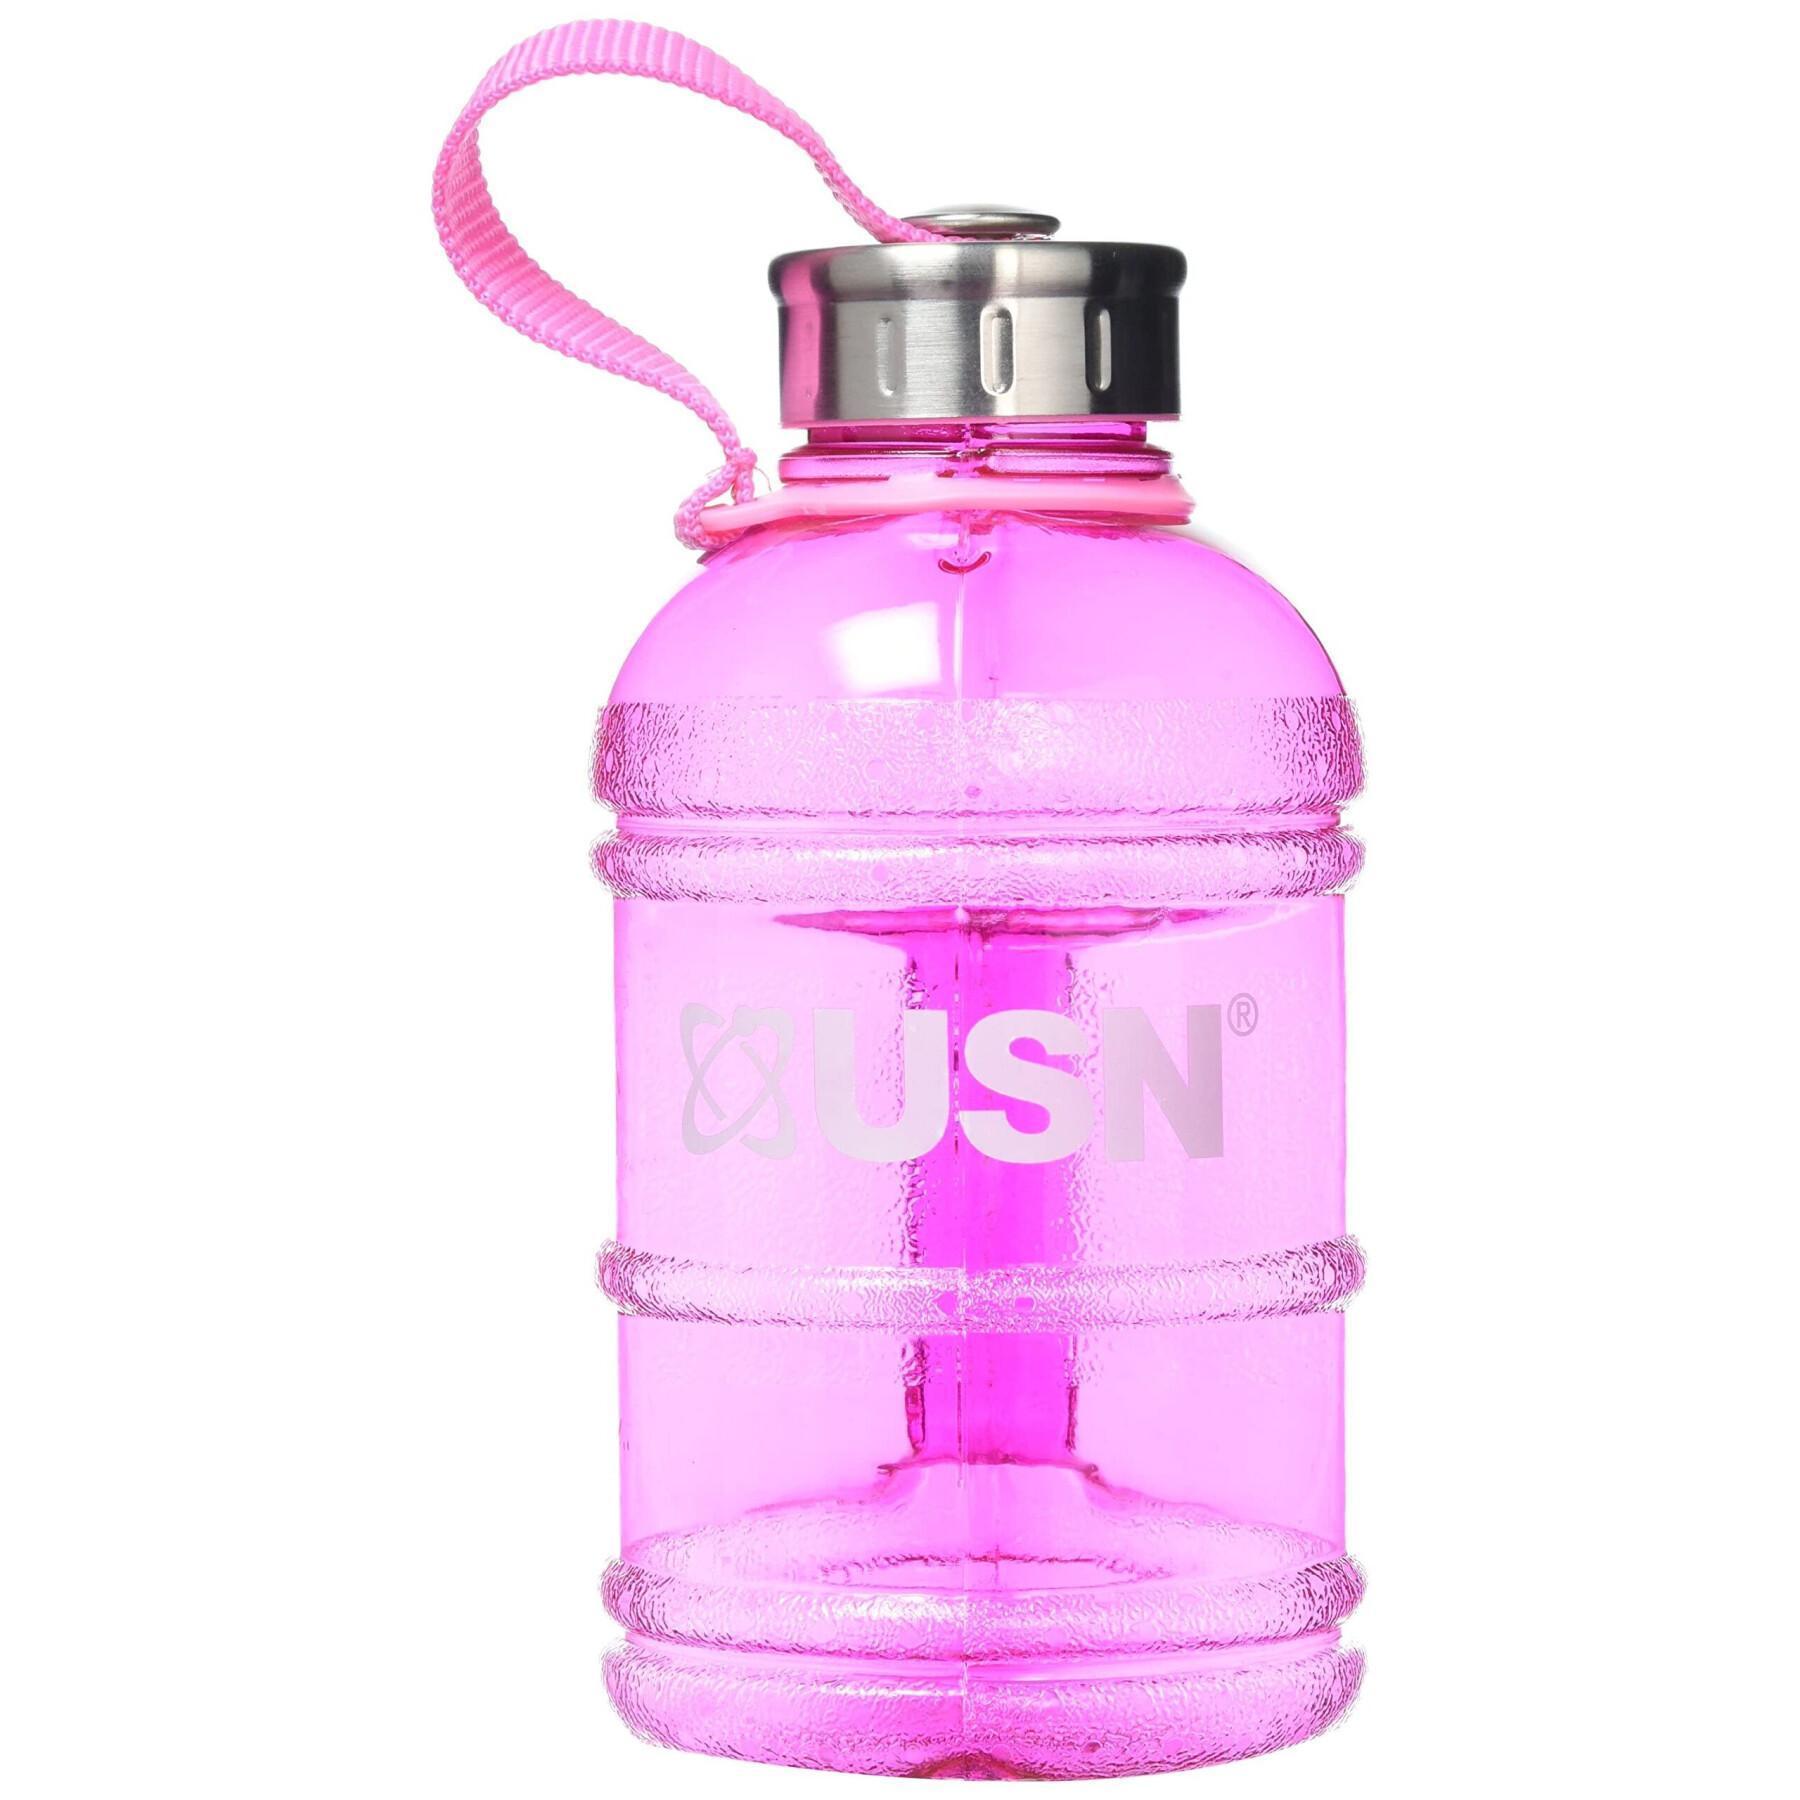 Water bottle USN (1L)